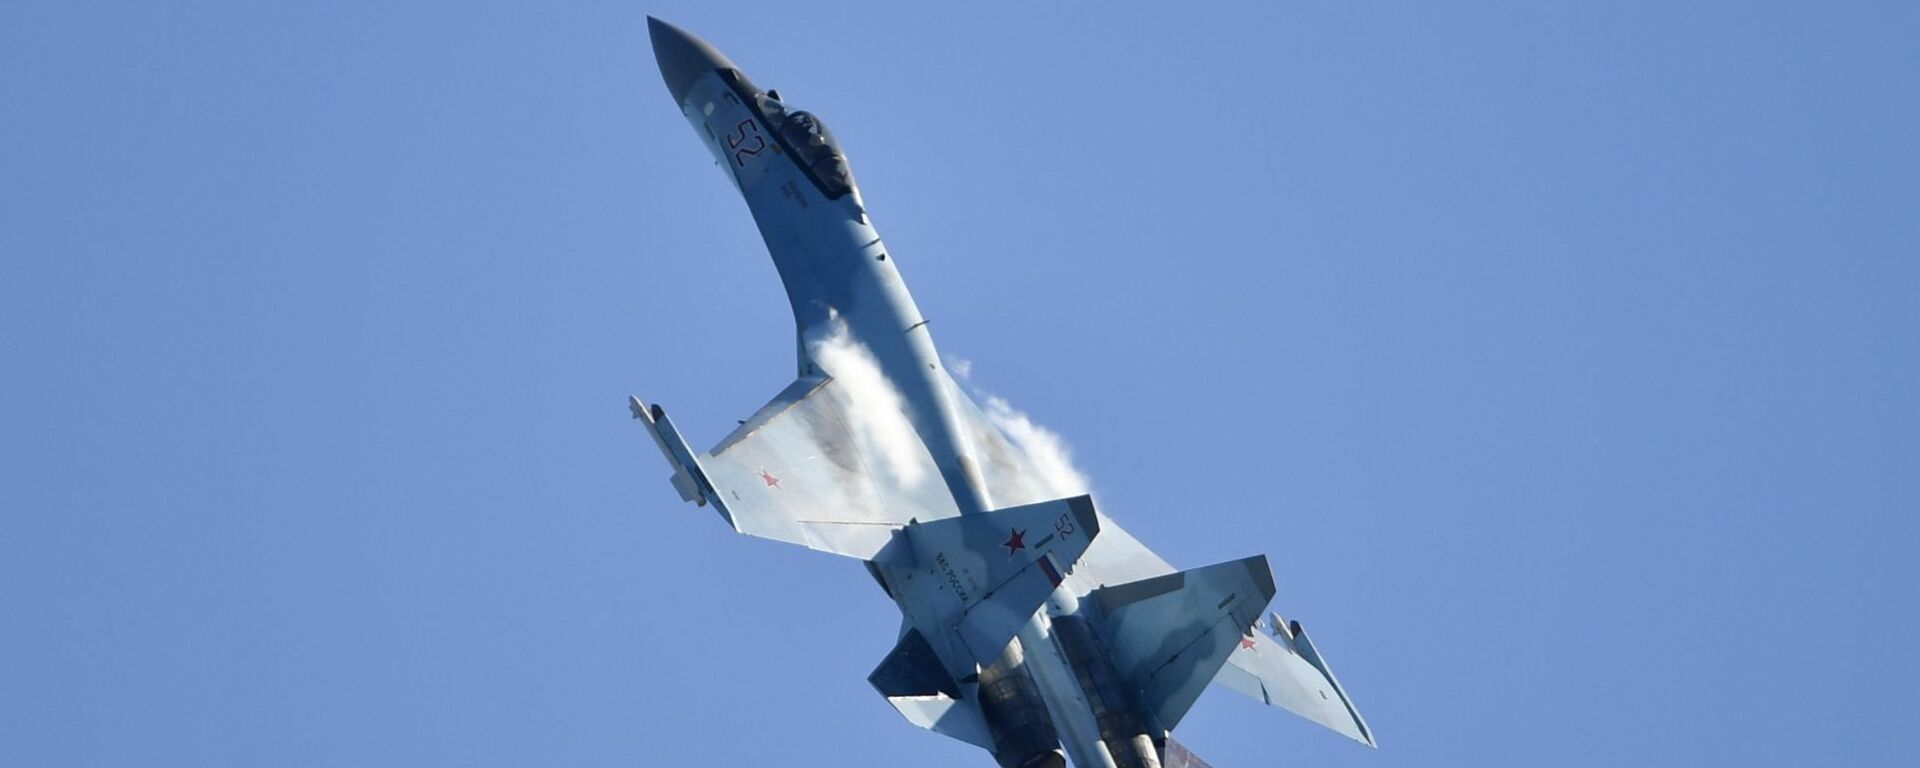 Máy bay chiến đấu đa năng Su-35 của Nga tại Triển lãm Hàng không và Vũ trụ Quốc tế MAKS-2019 - Sputnik Việt Nam, 1920, 05.10.2019